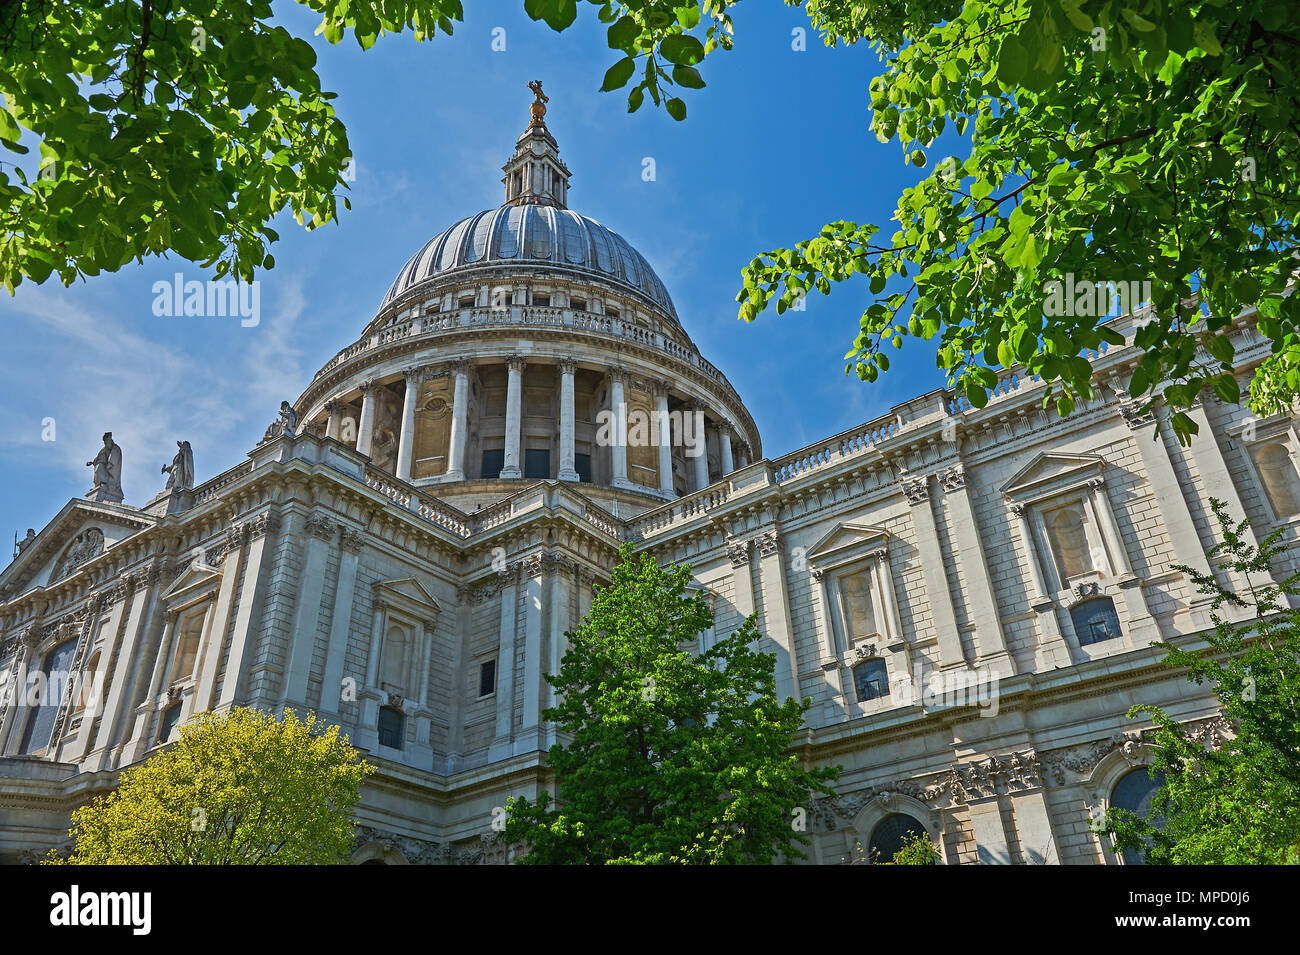 La Catedral de San Pablo, Londres, es Sir Christopher Wren obra maestra arquitectónica del edificio, que aún domina el horizonte de Londres Foto de stock